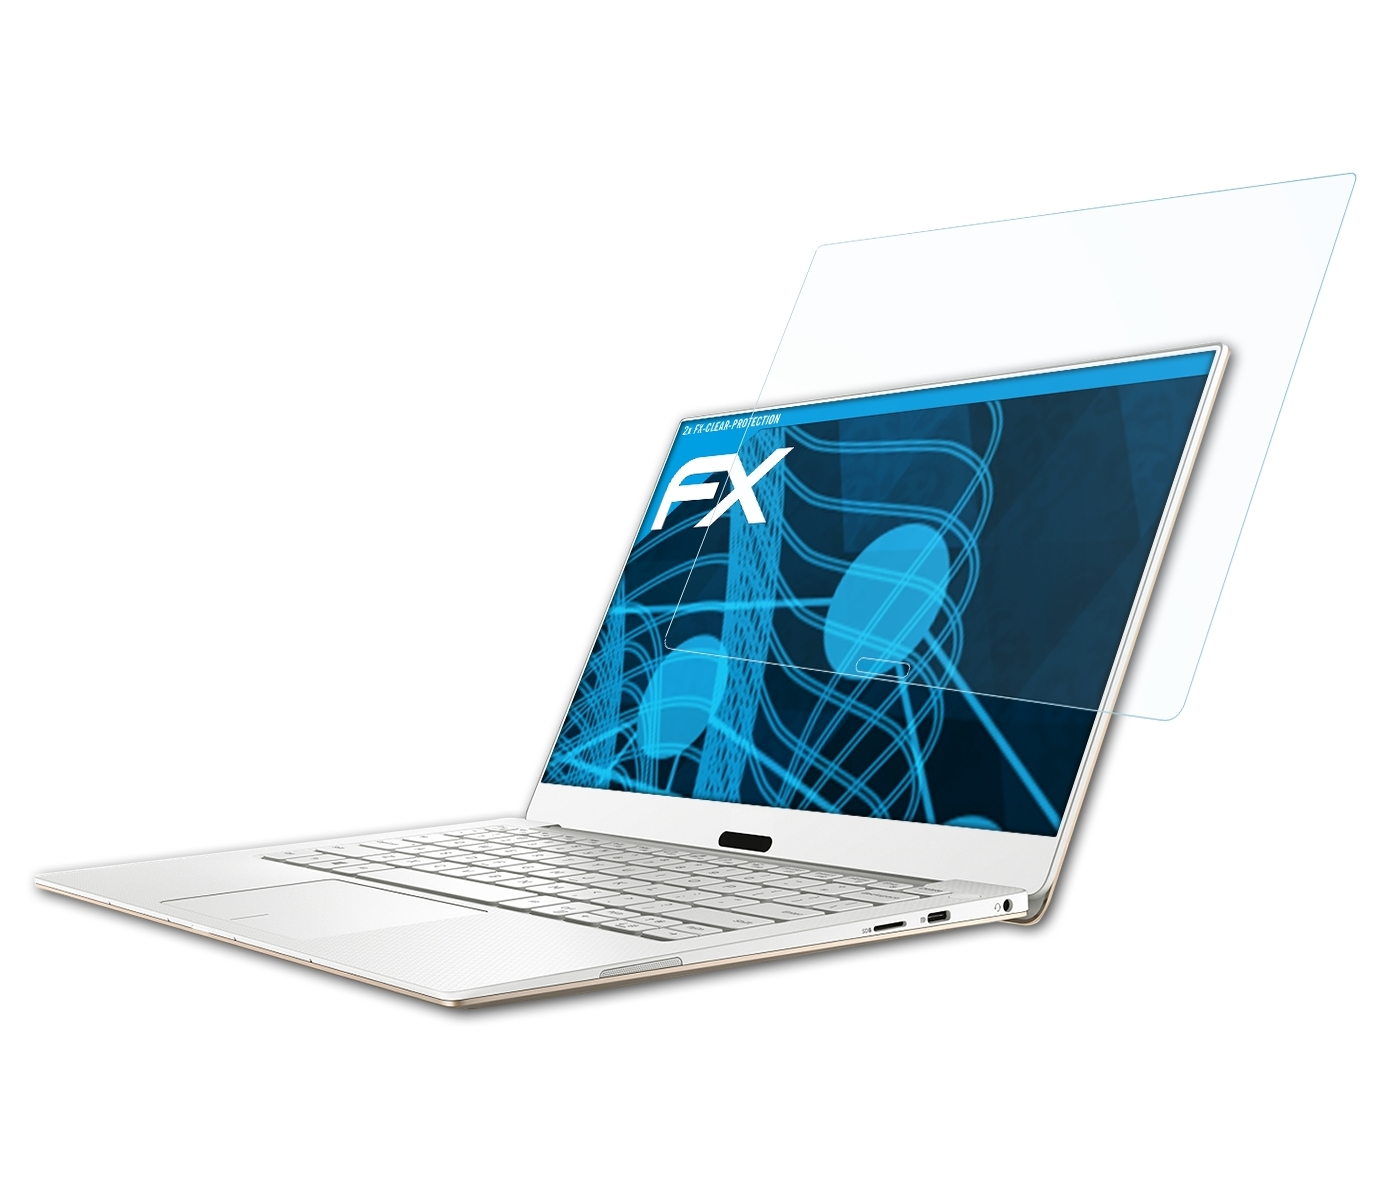 ATFOLIX FX-Clear Displayschutz(für (9370)) 13 XPS 2x Dell 2018